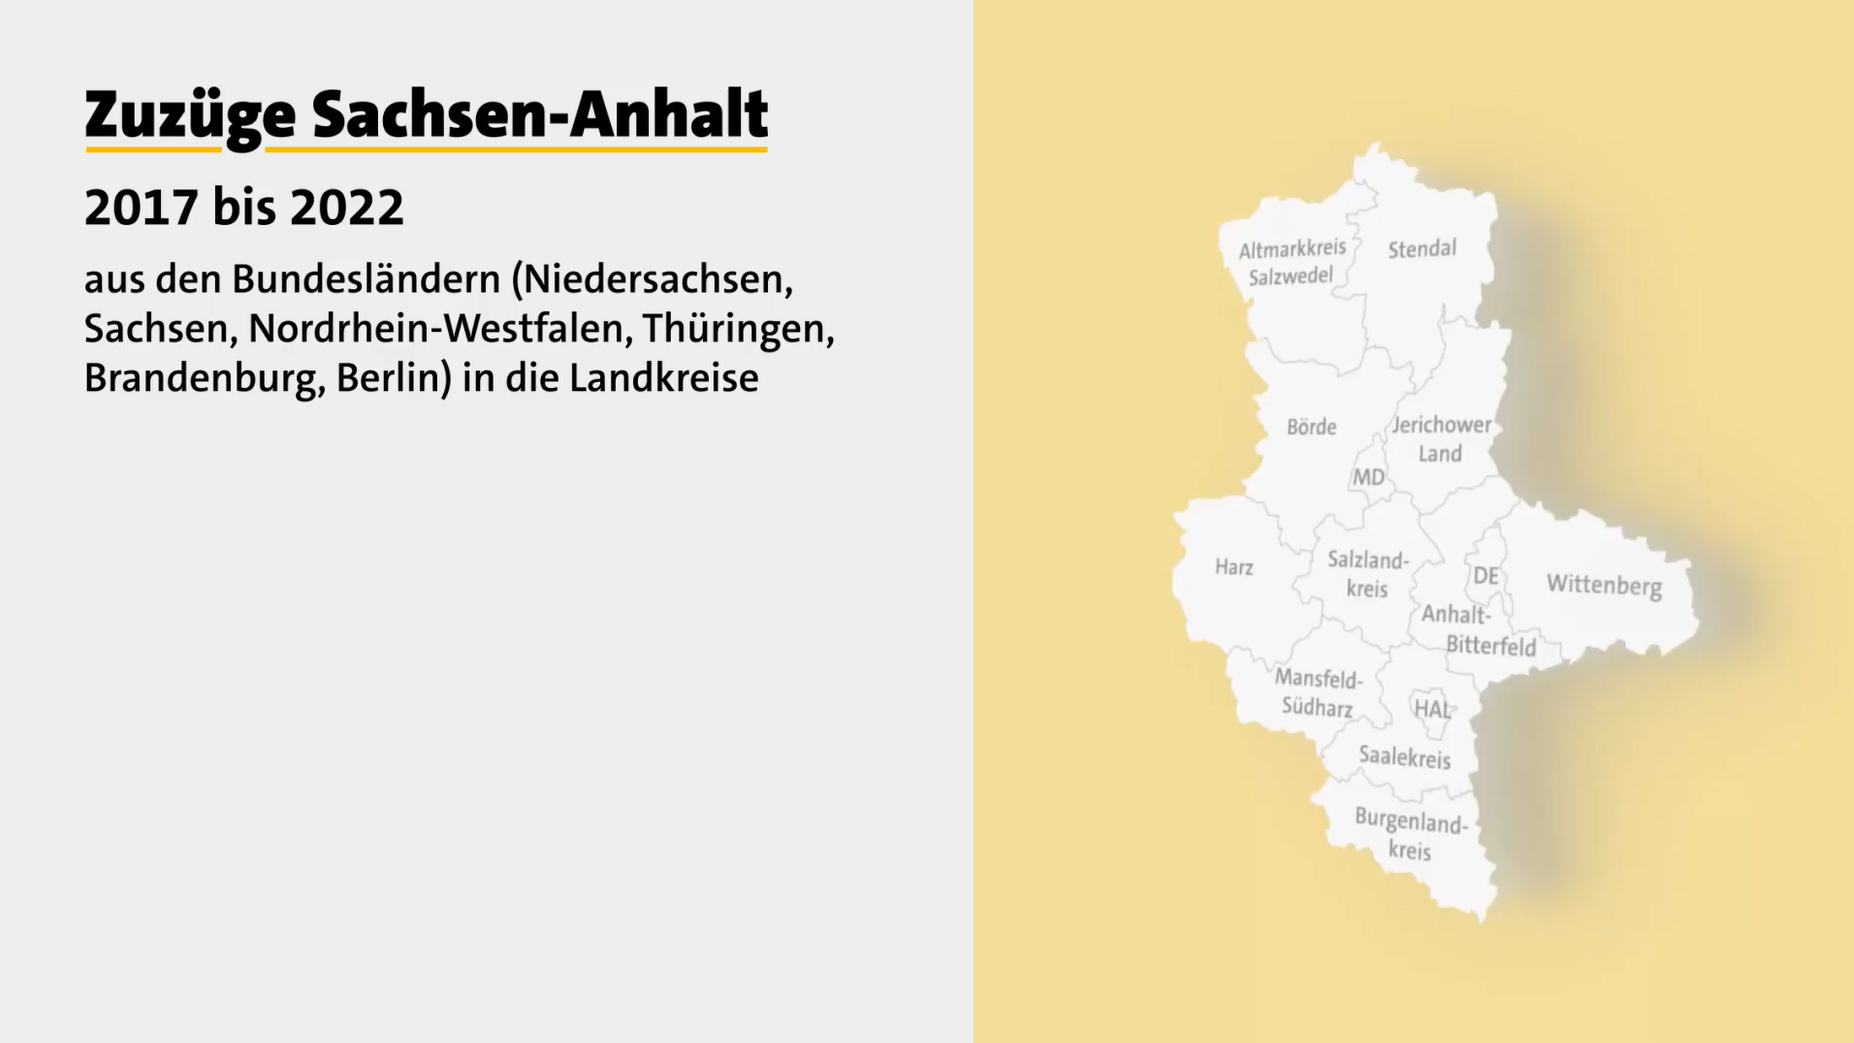 Startbild des Videos zu Zuzügen Sachsen-Anhalt 2017 bis 2022